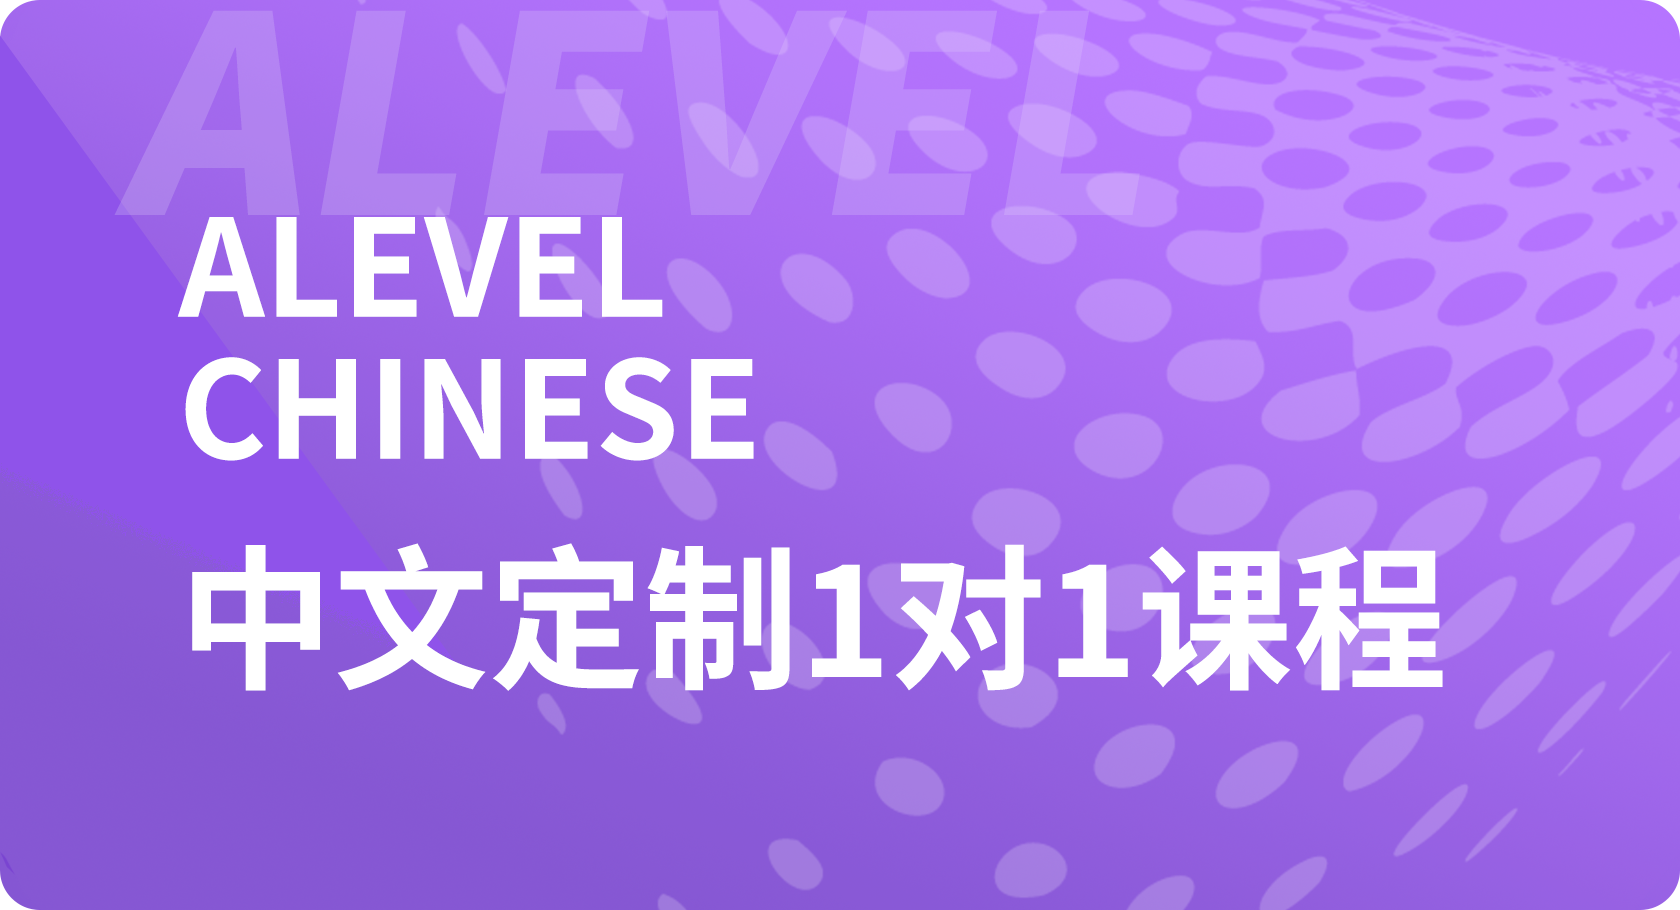 Alevel中文1对1课程